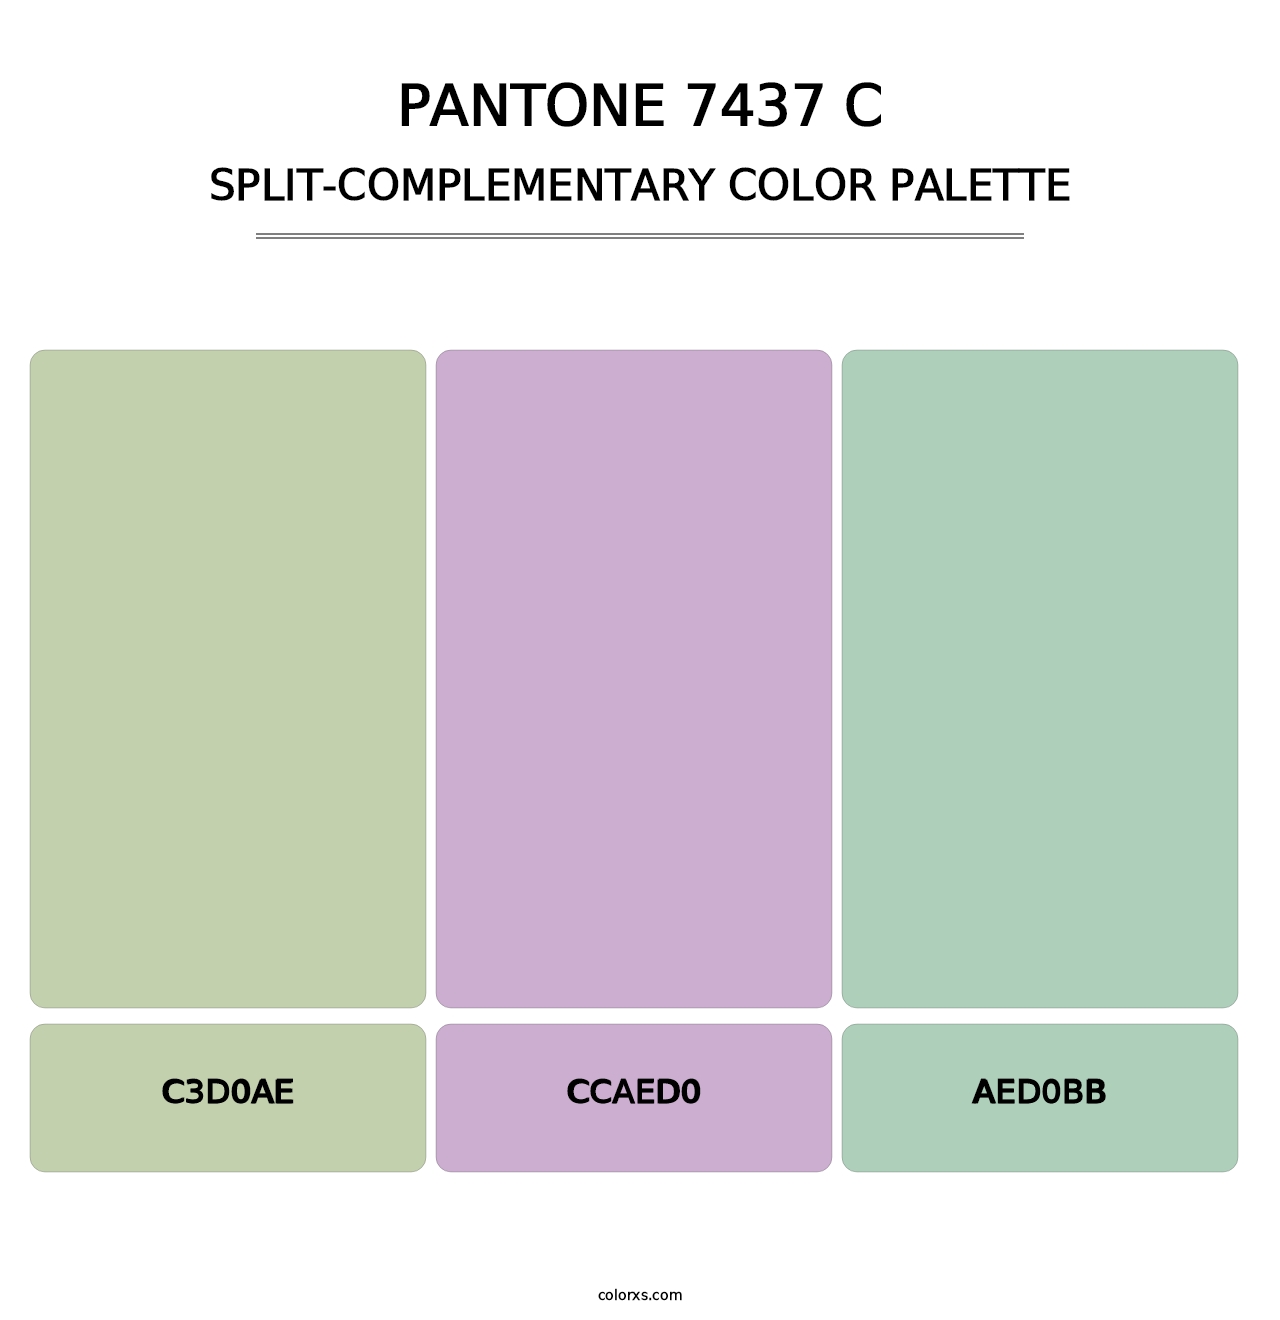 PANTONE 7437 C - Split-Complementary Color Palette